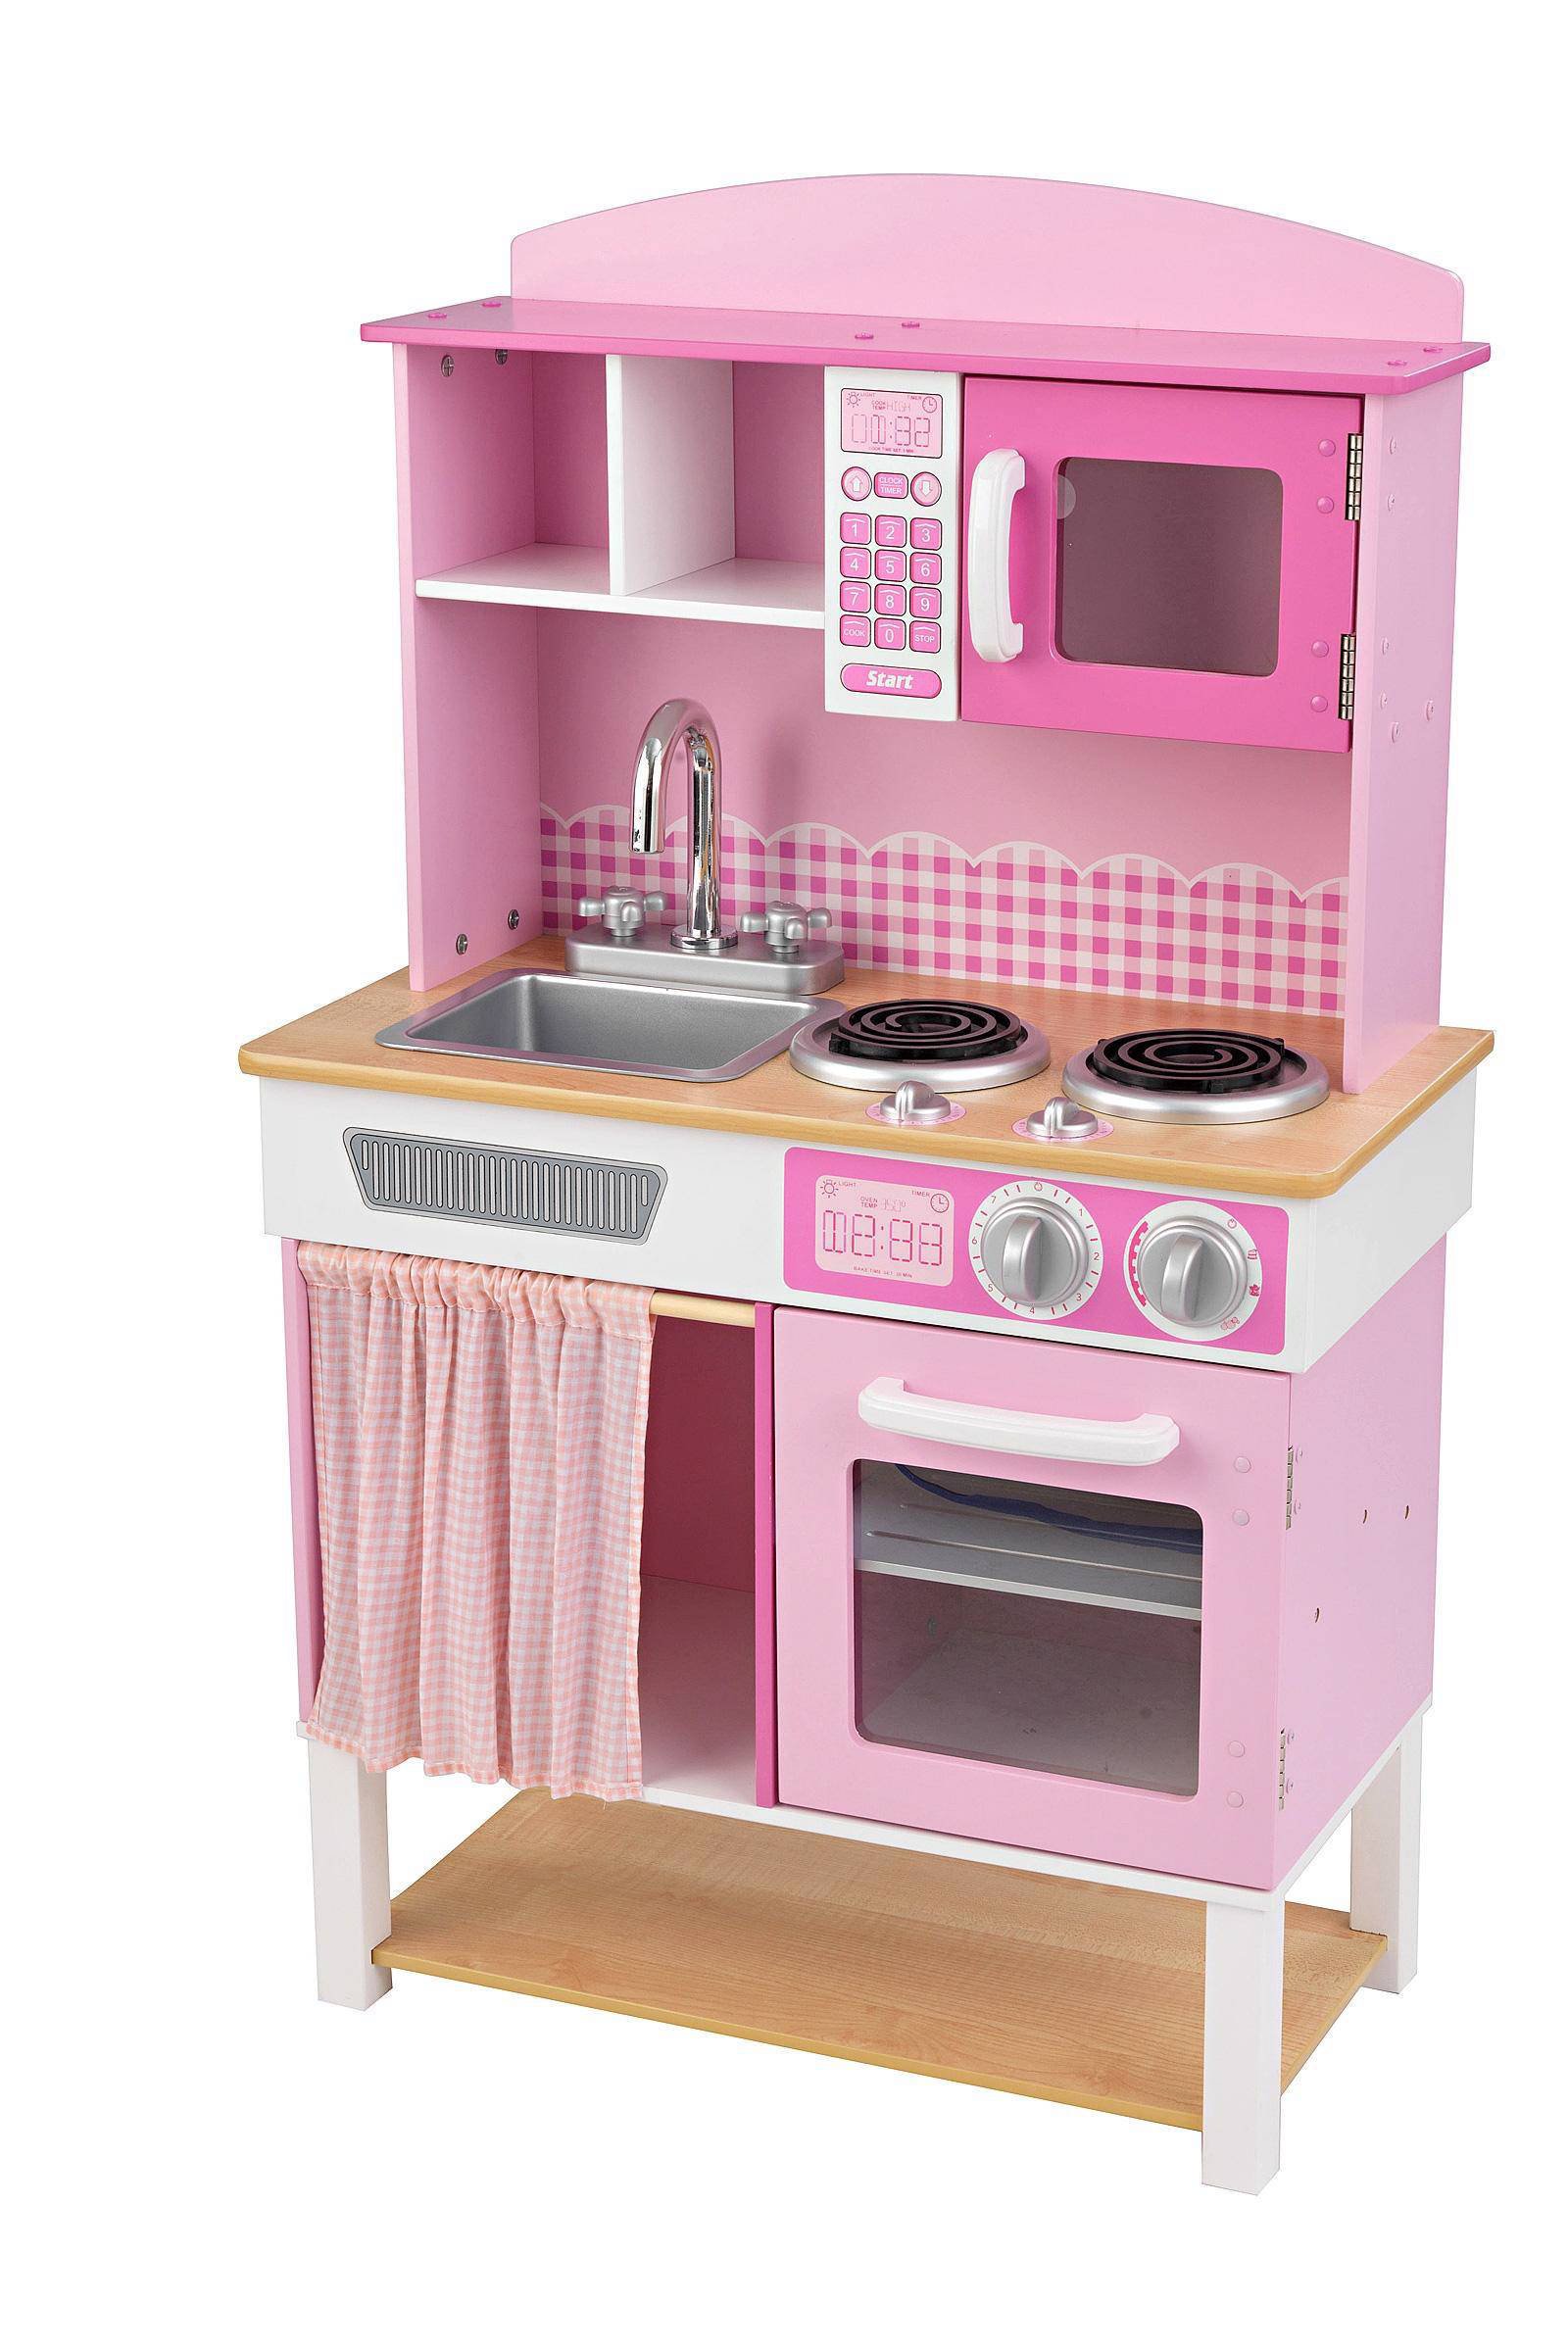 Punt spannend breuk KidKraft Speelgoed keuken home Cookin' 61x34x101 cm roze 53198 -  Klokken.shop